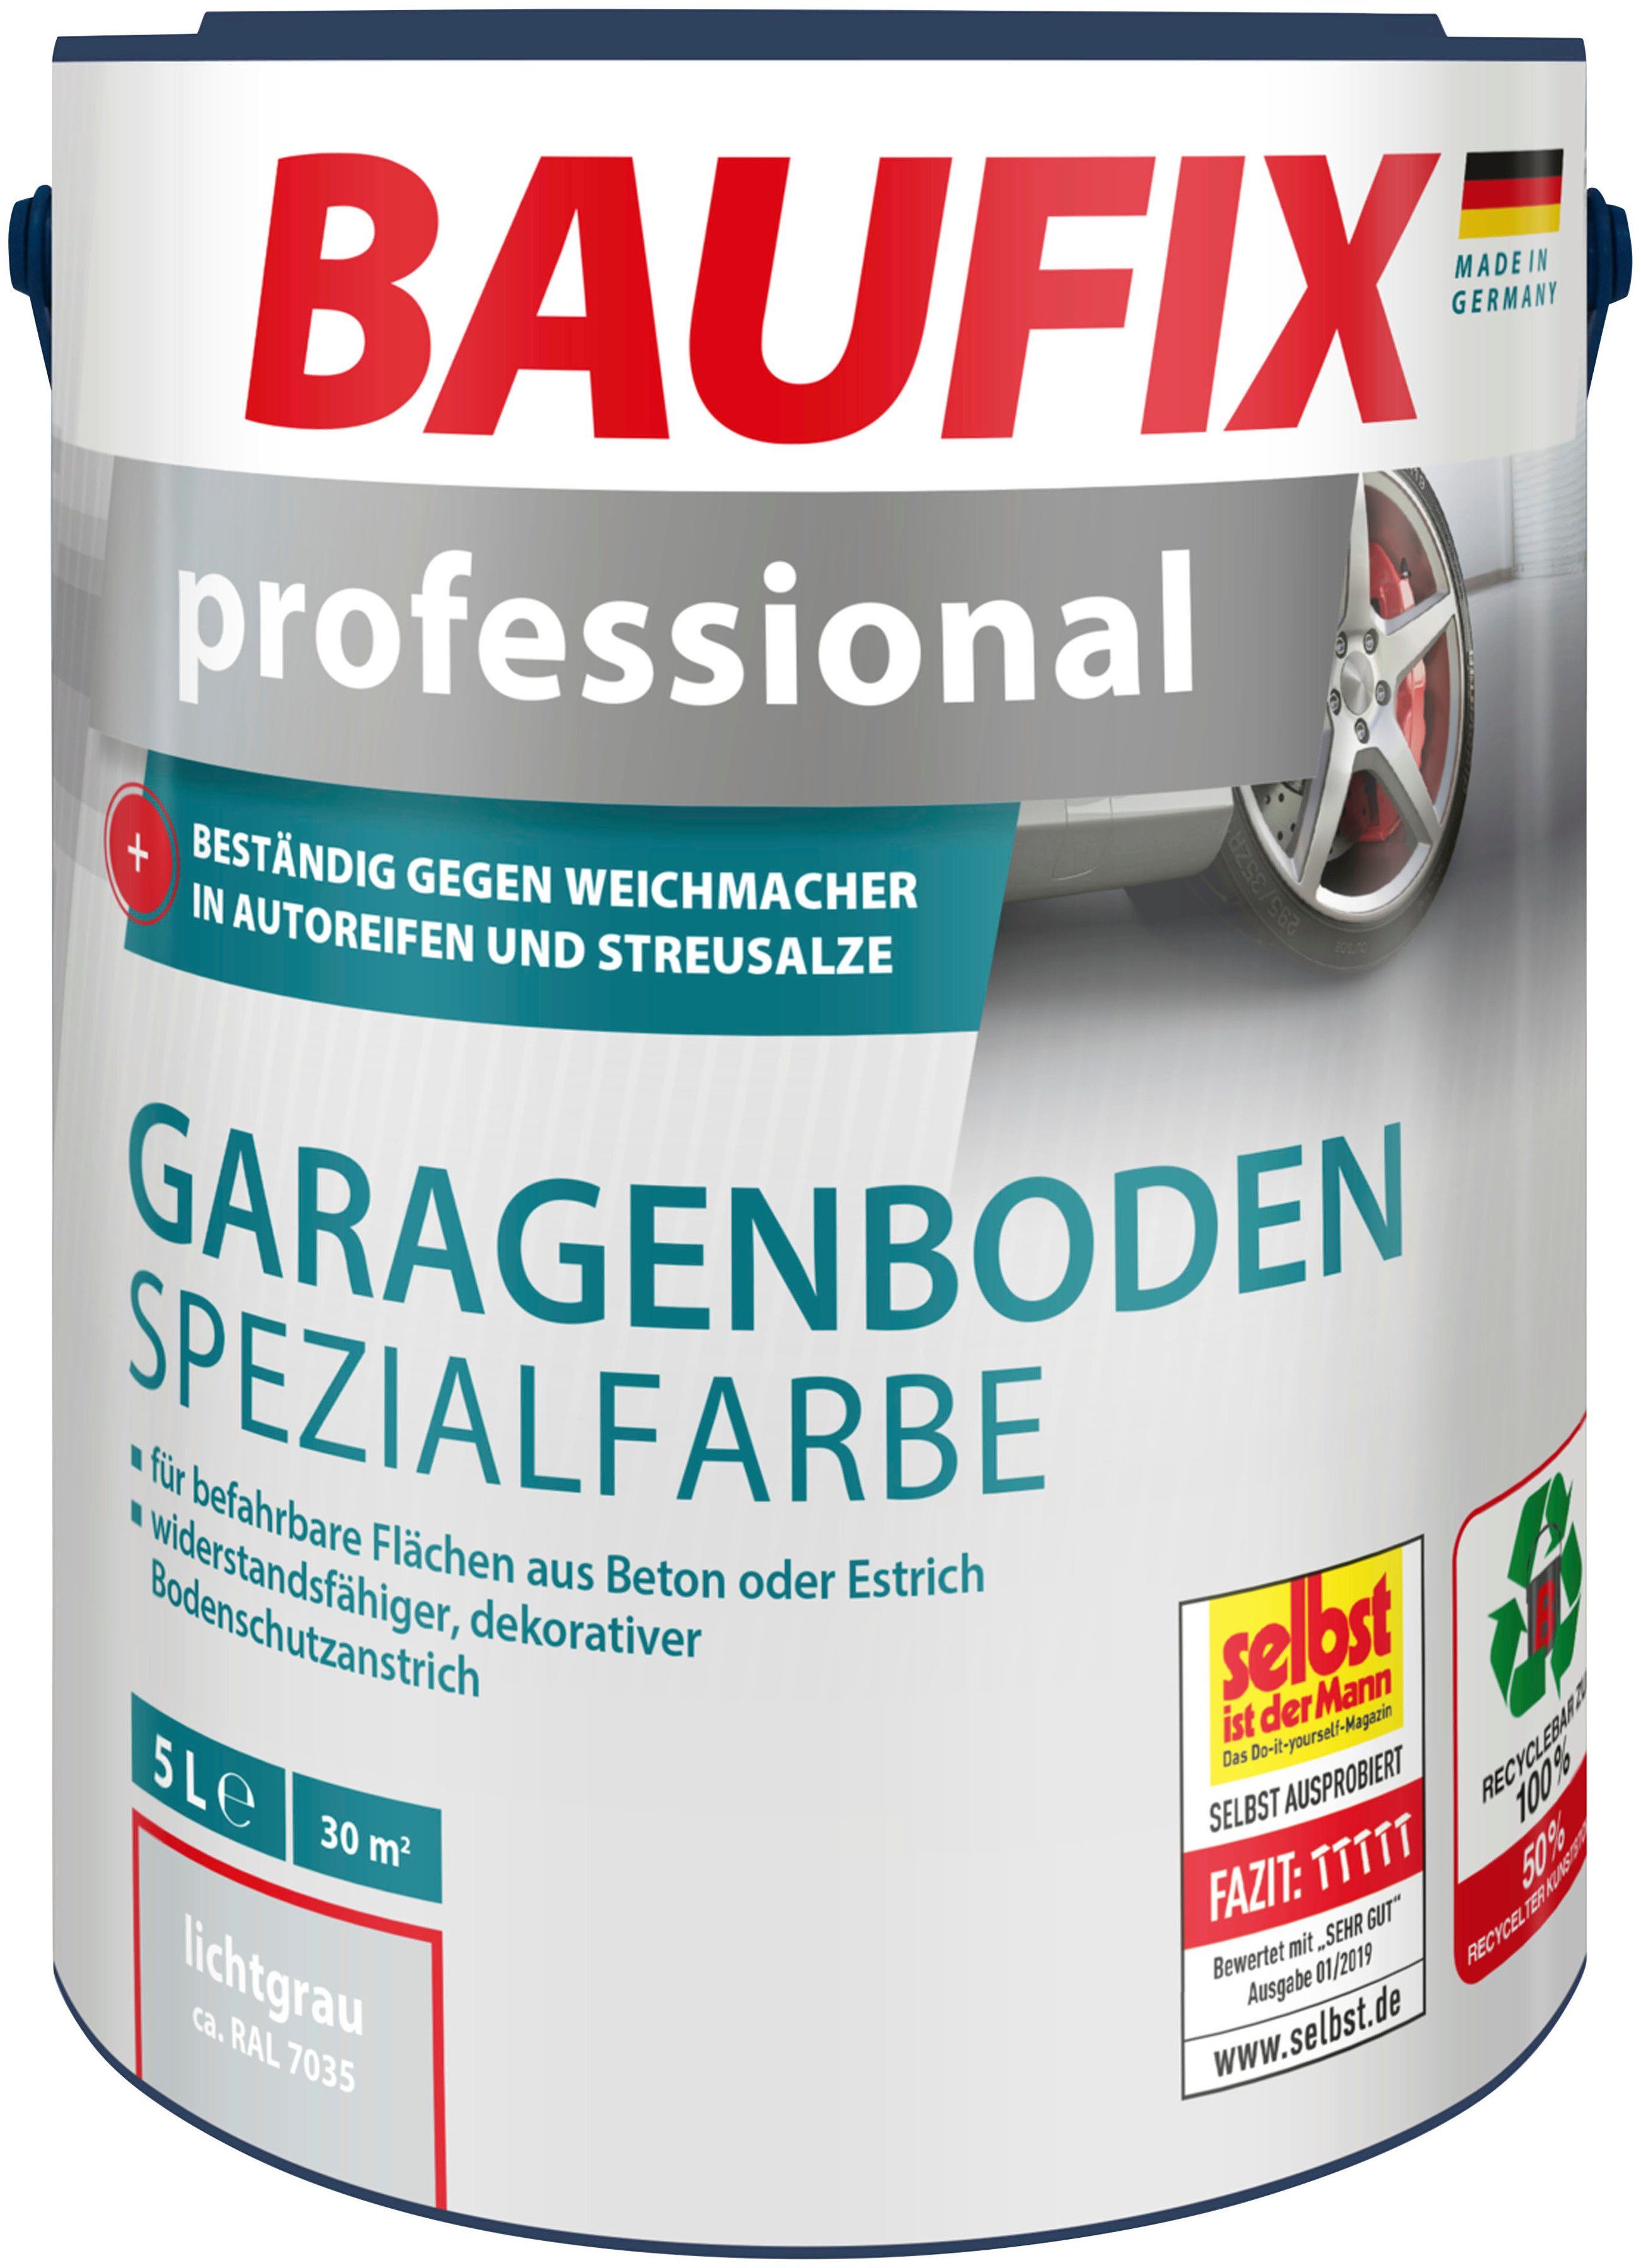 Baufix Acryl-Flüssigkunststoff professional Garagenboden Spezialfarbe, wasserbeständig, UV beständig, wetterbeständig, 5L, matt lichtgrau